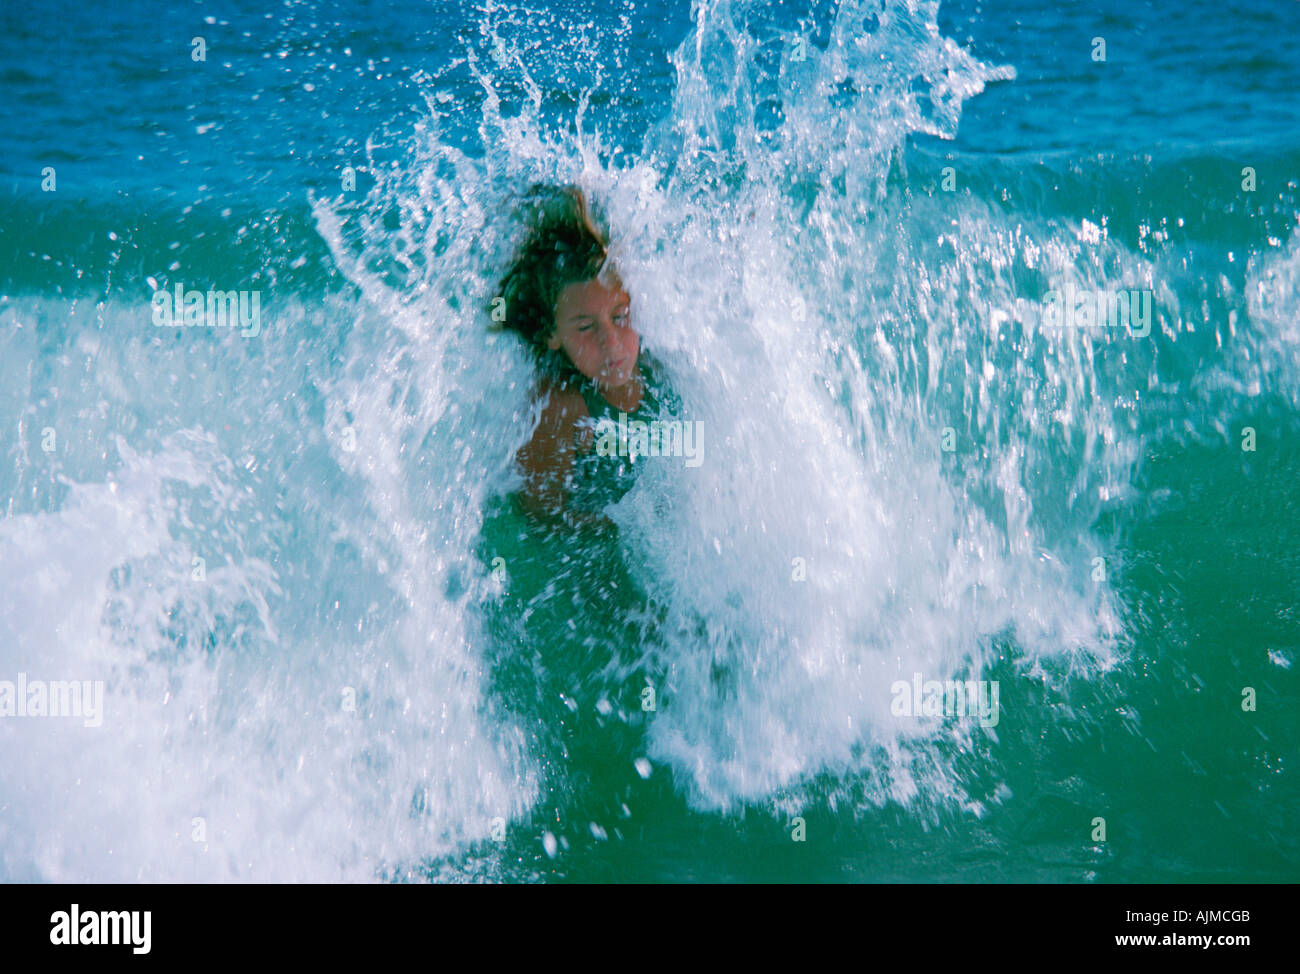 Boy bodysurfing Stock Photo